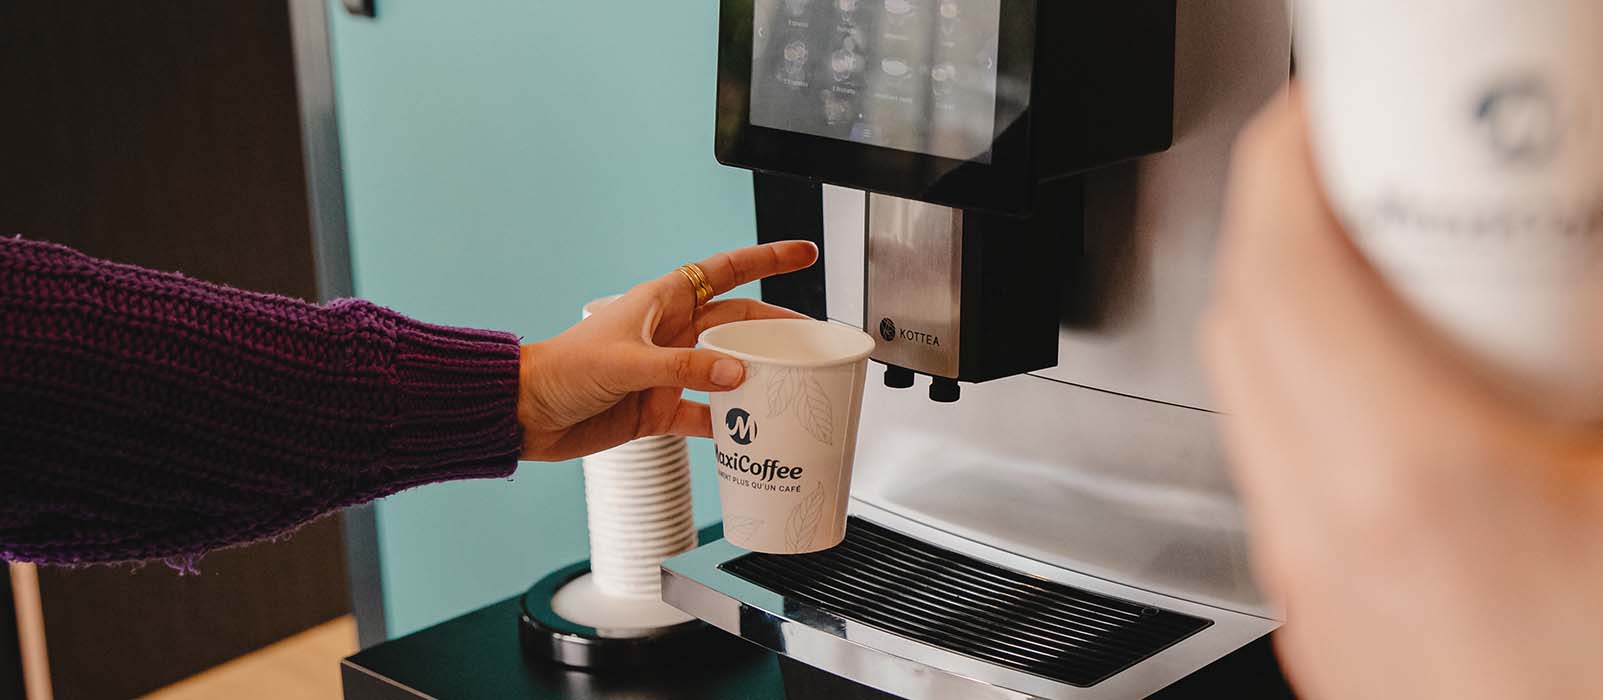 Machines à café de bureau : Machines à café pour les entreprises - Create